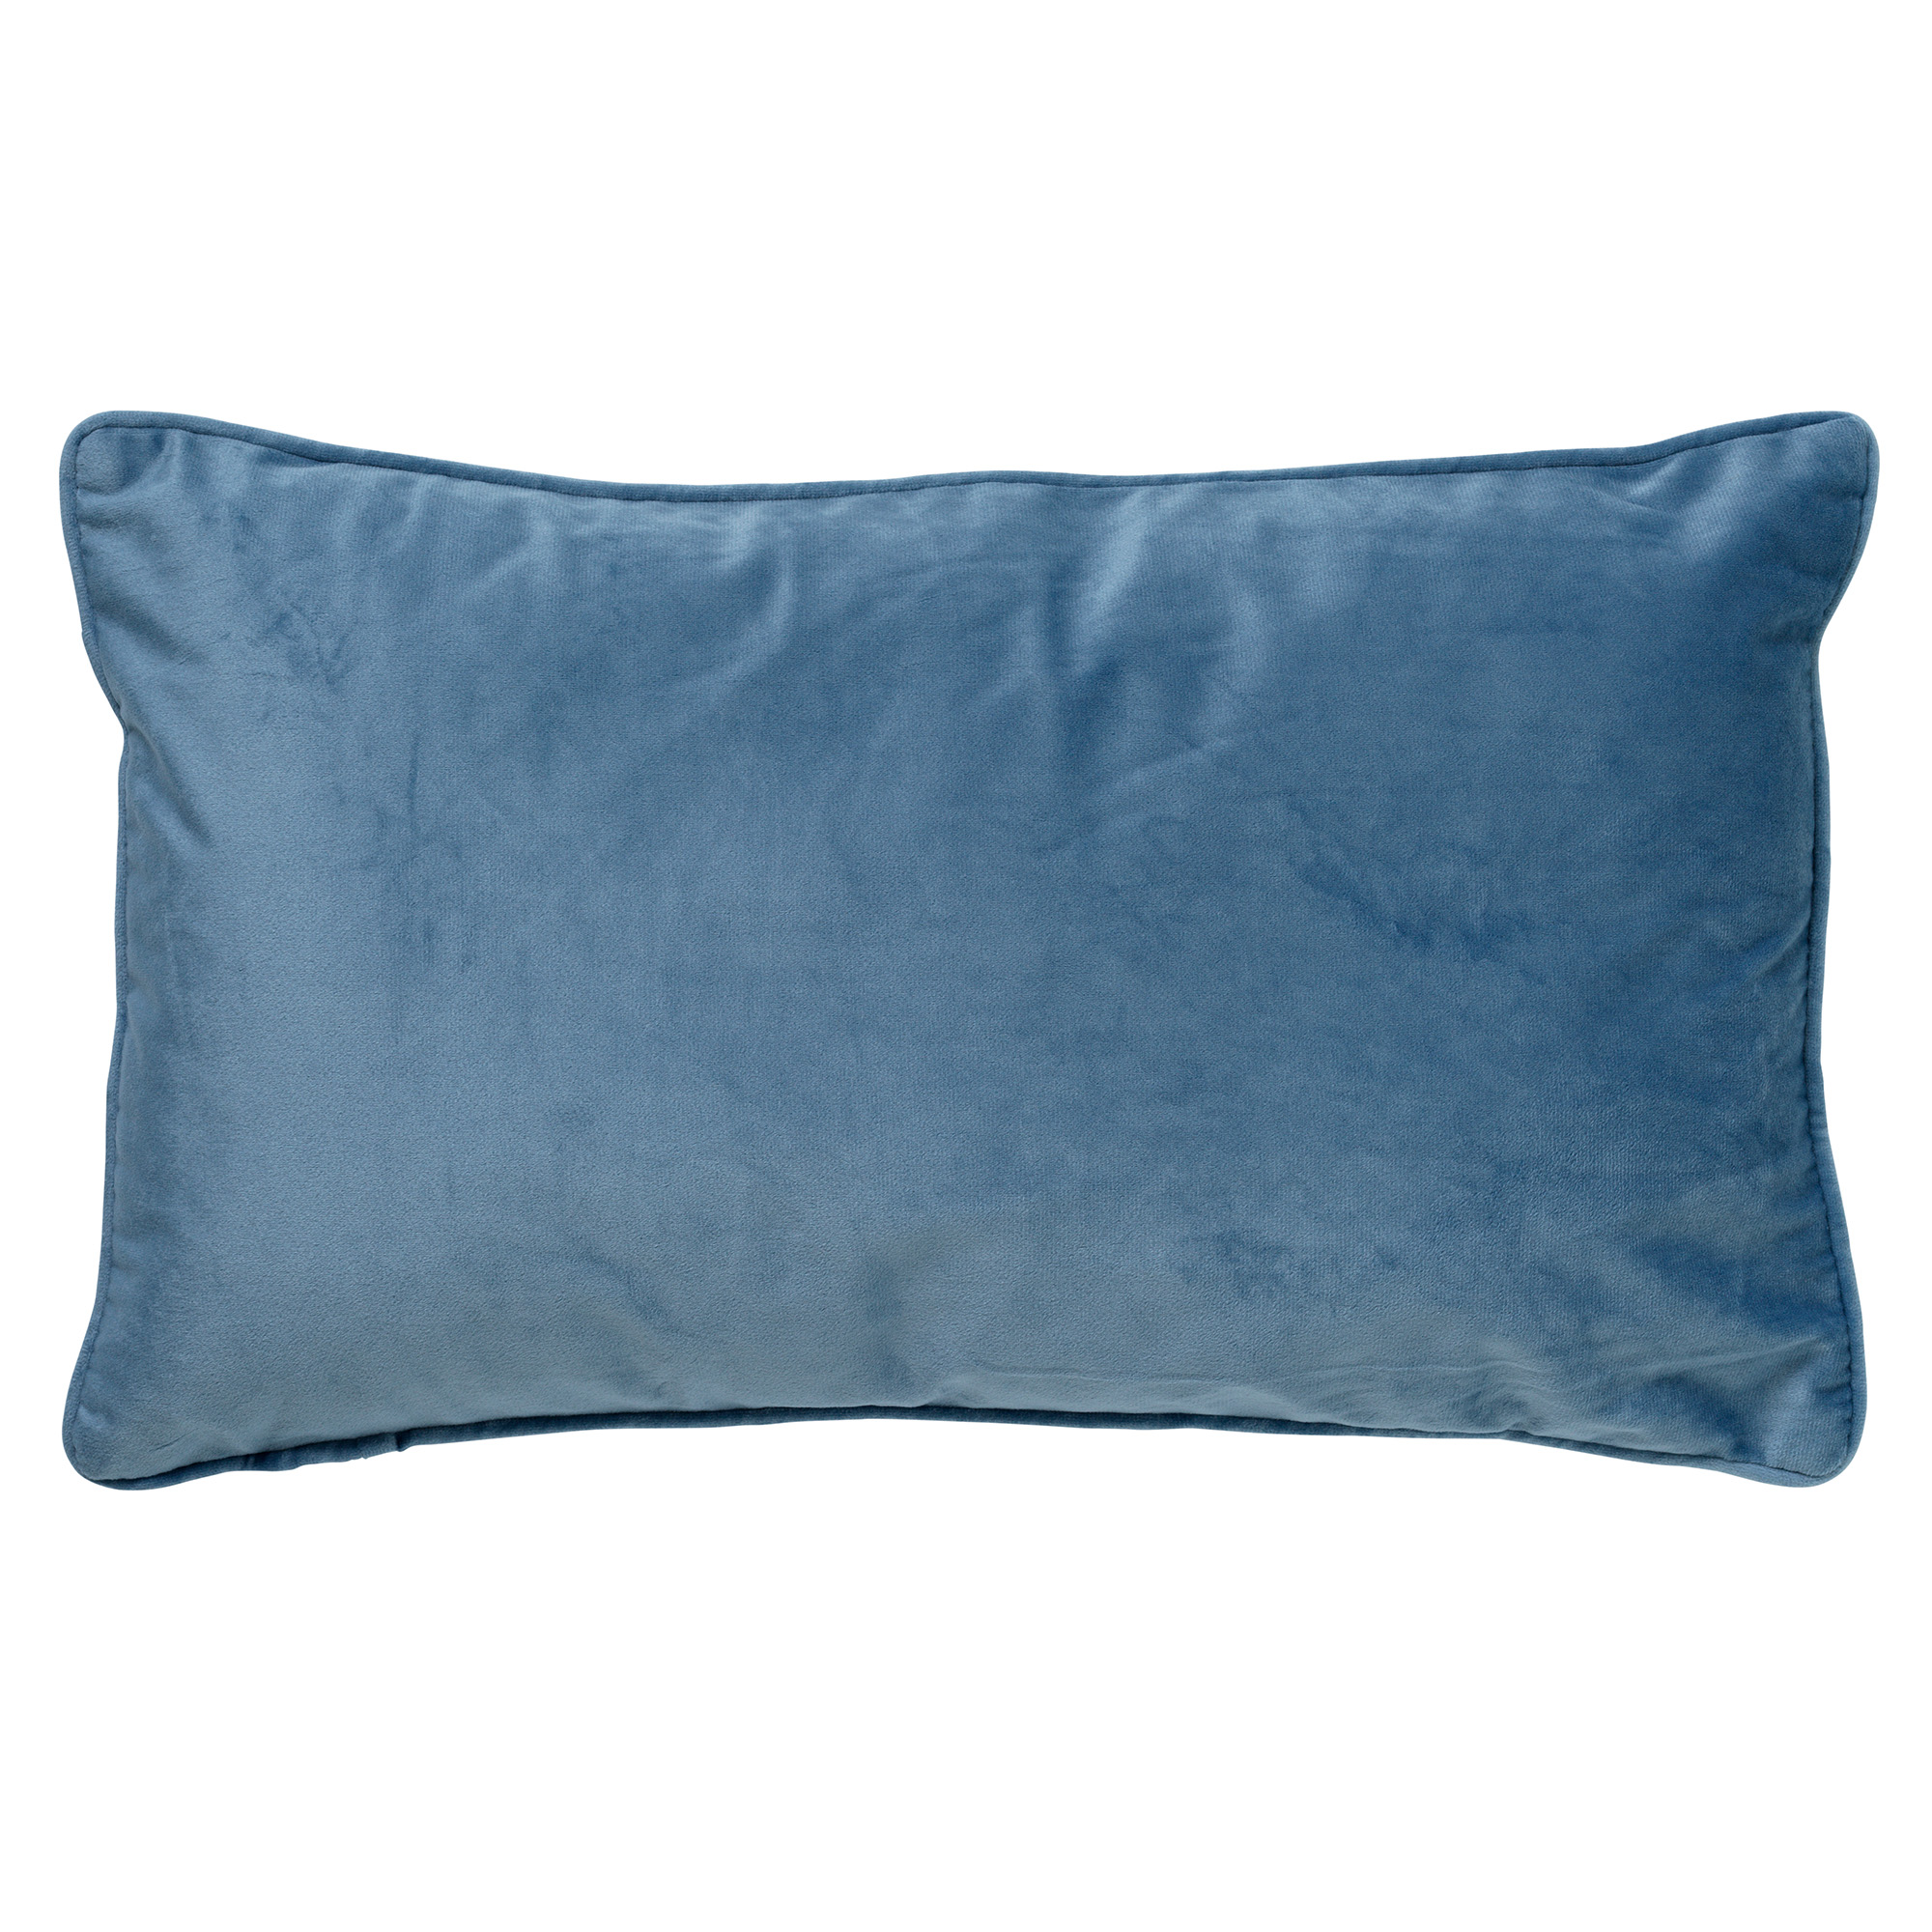 FINN - Cushion 30x50 cm Provincial Blue - blue